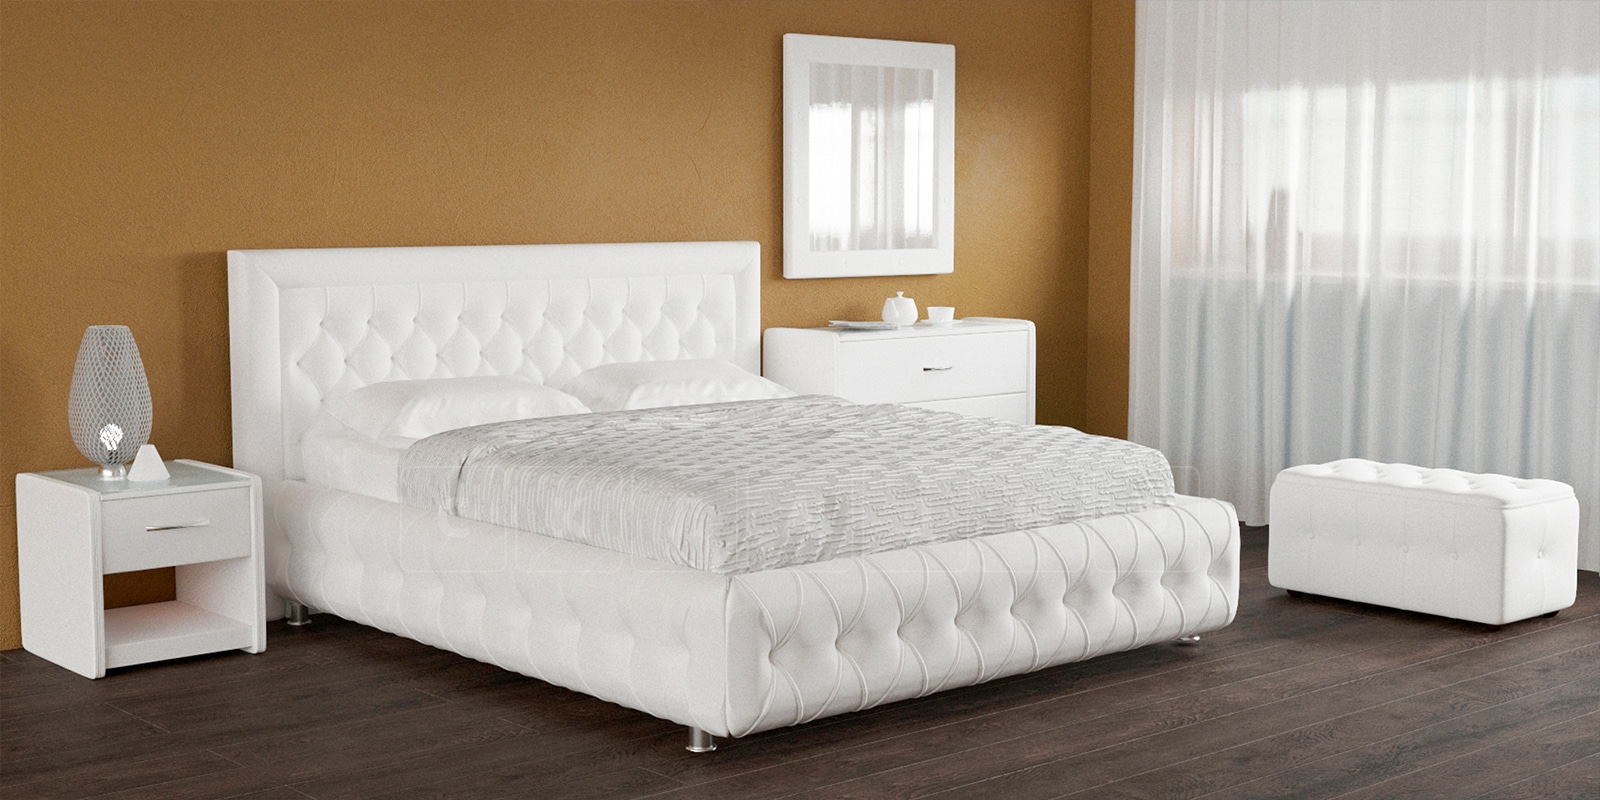 Мягкая кровать Малибу 160см экокожа белого цвета вариант 7-2 фото 5 | интернет-магазин Складно